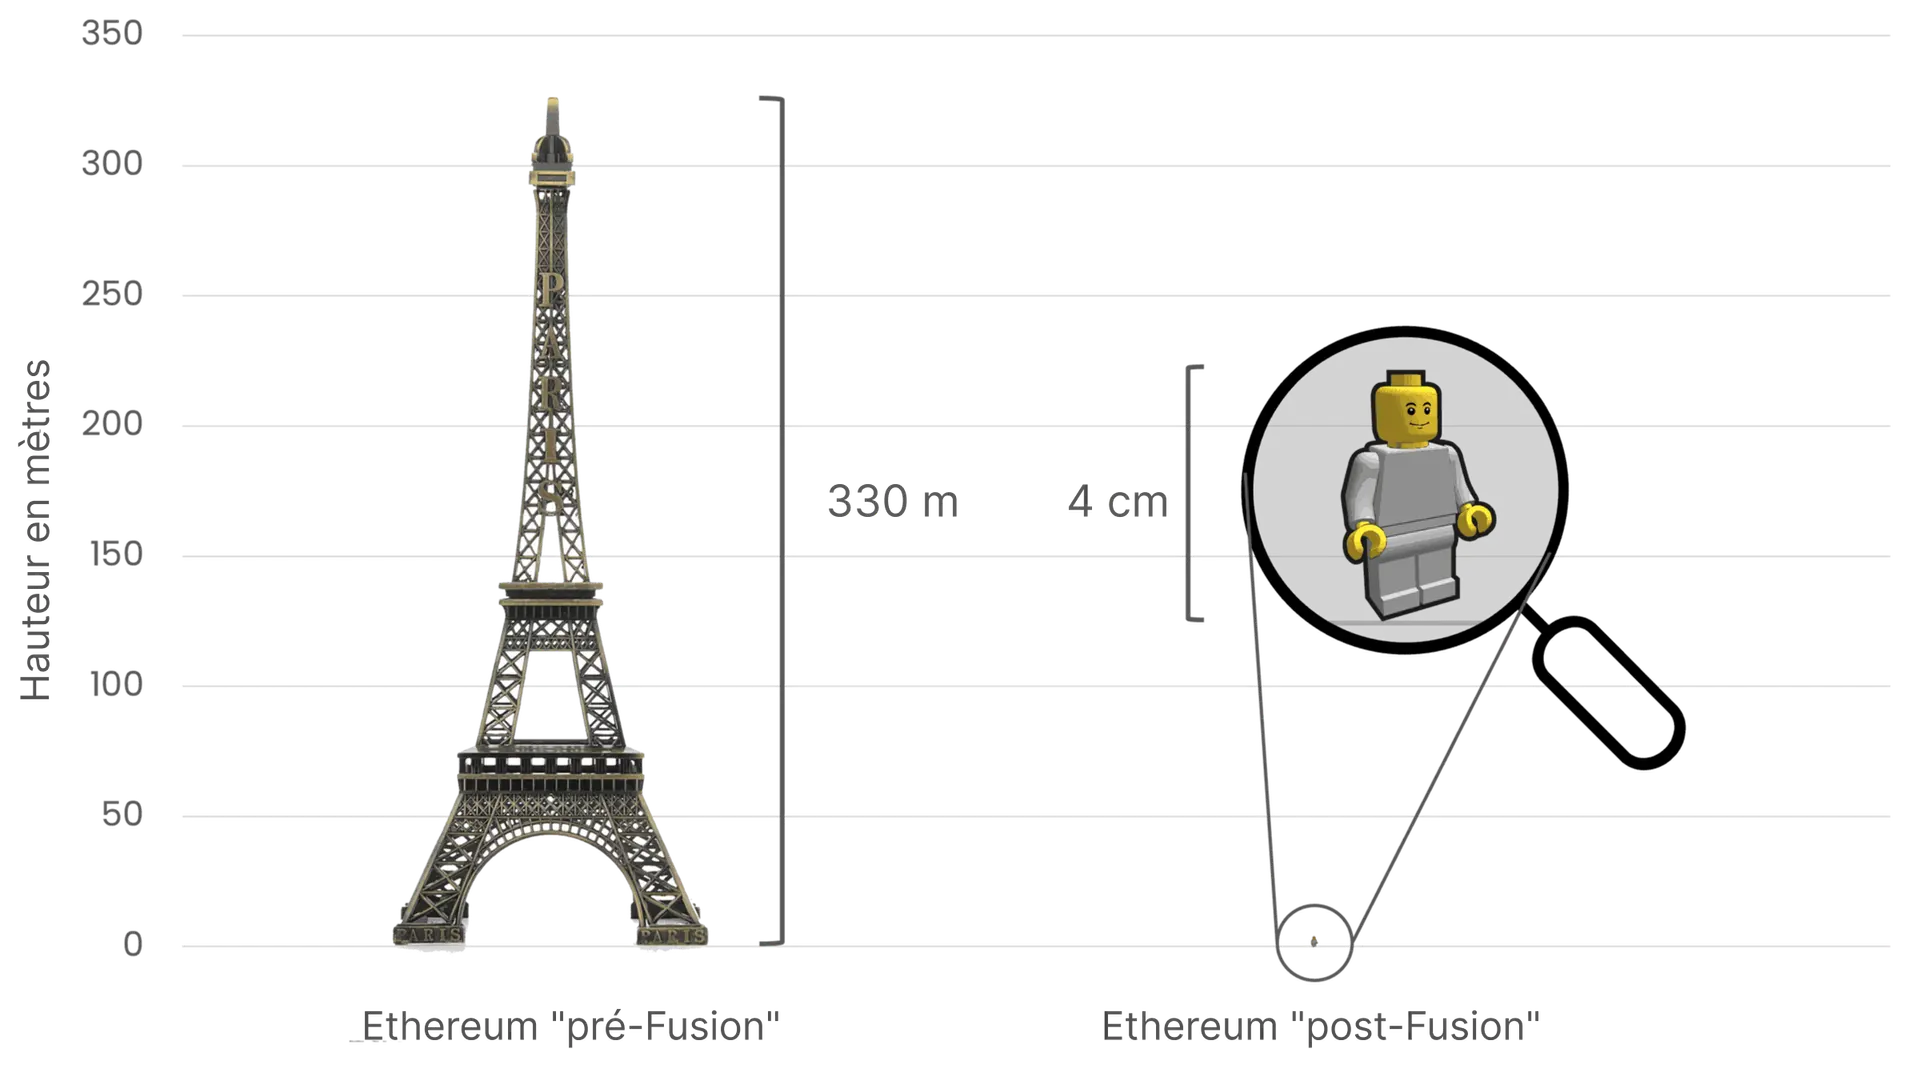 Comparaison de la consommation d'énergie d'Ethereum avant et après La Fusion, en utilisant la tour Eiffel (300 mètres de haut) sur la gauche pour symboliser la grande consommation d'énergie avant La Fusion, et une petite figurine Lego de 4 cm de haut sur la droite pour représenter la réduction drastique de consommation d'énergie après La Fusion